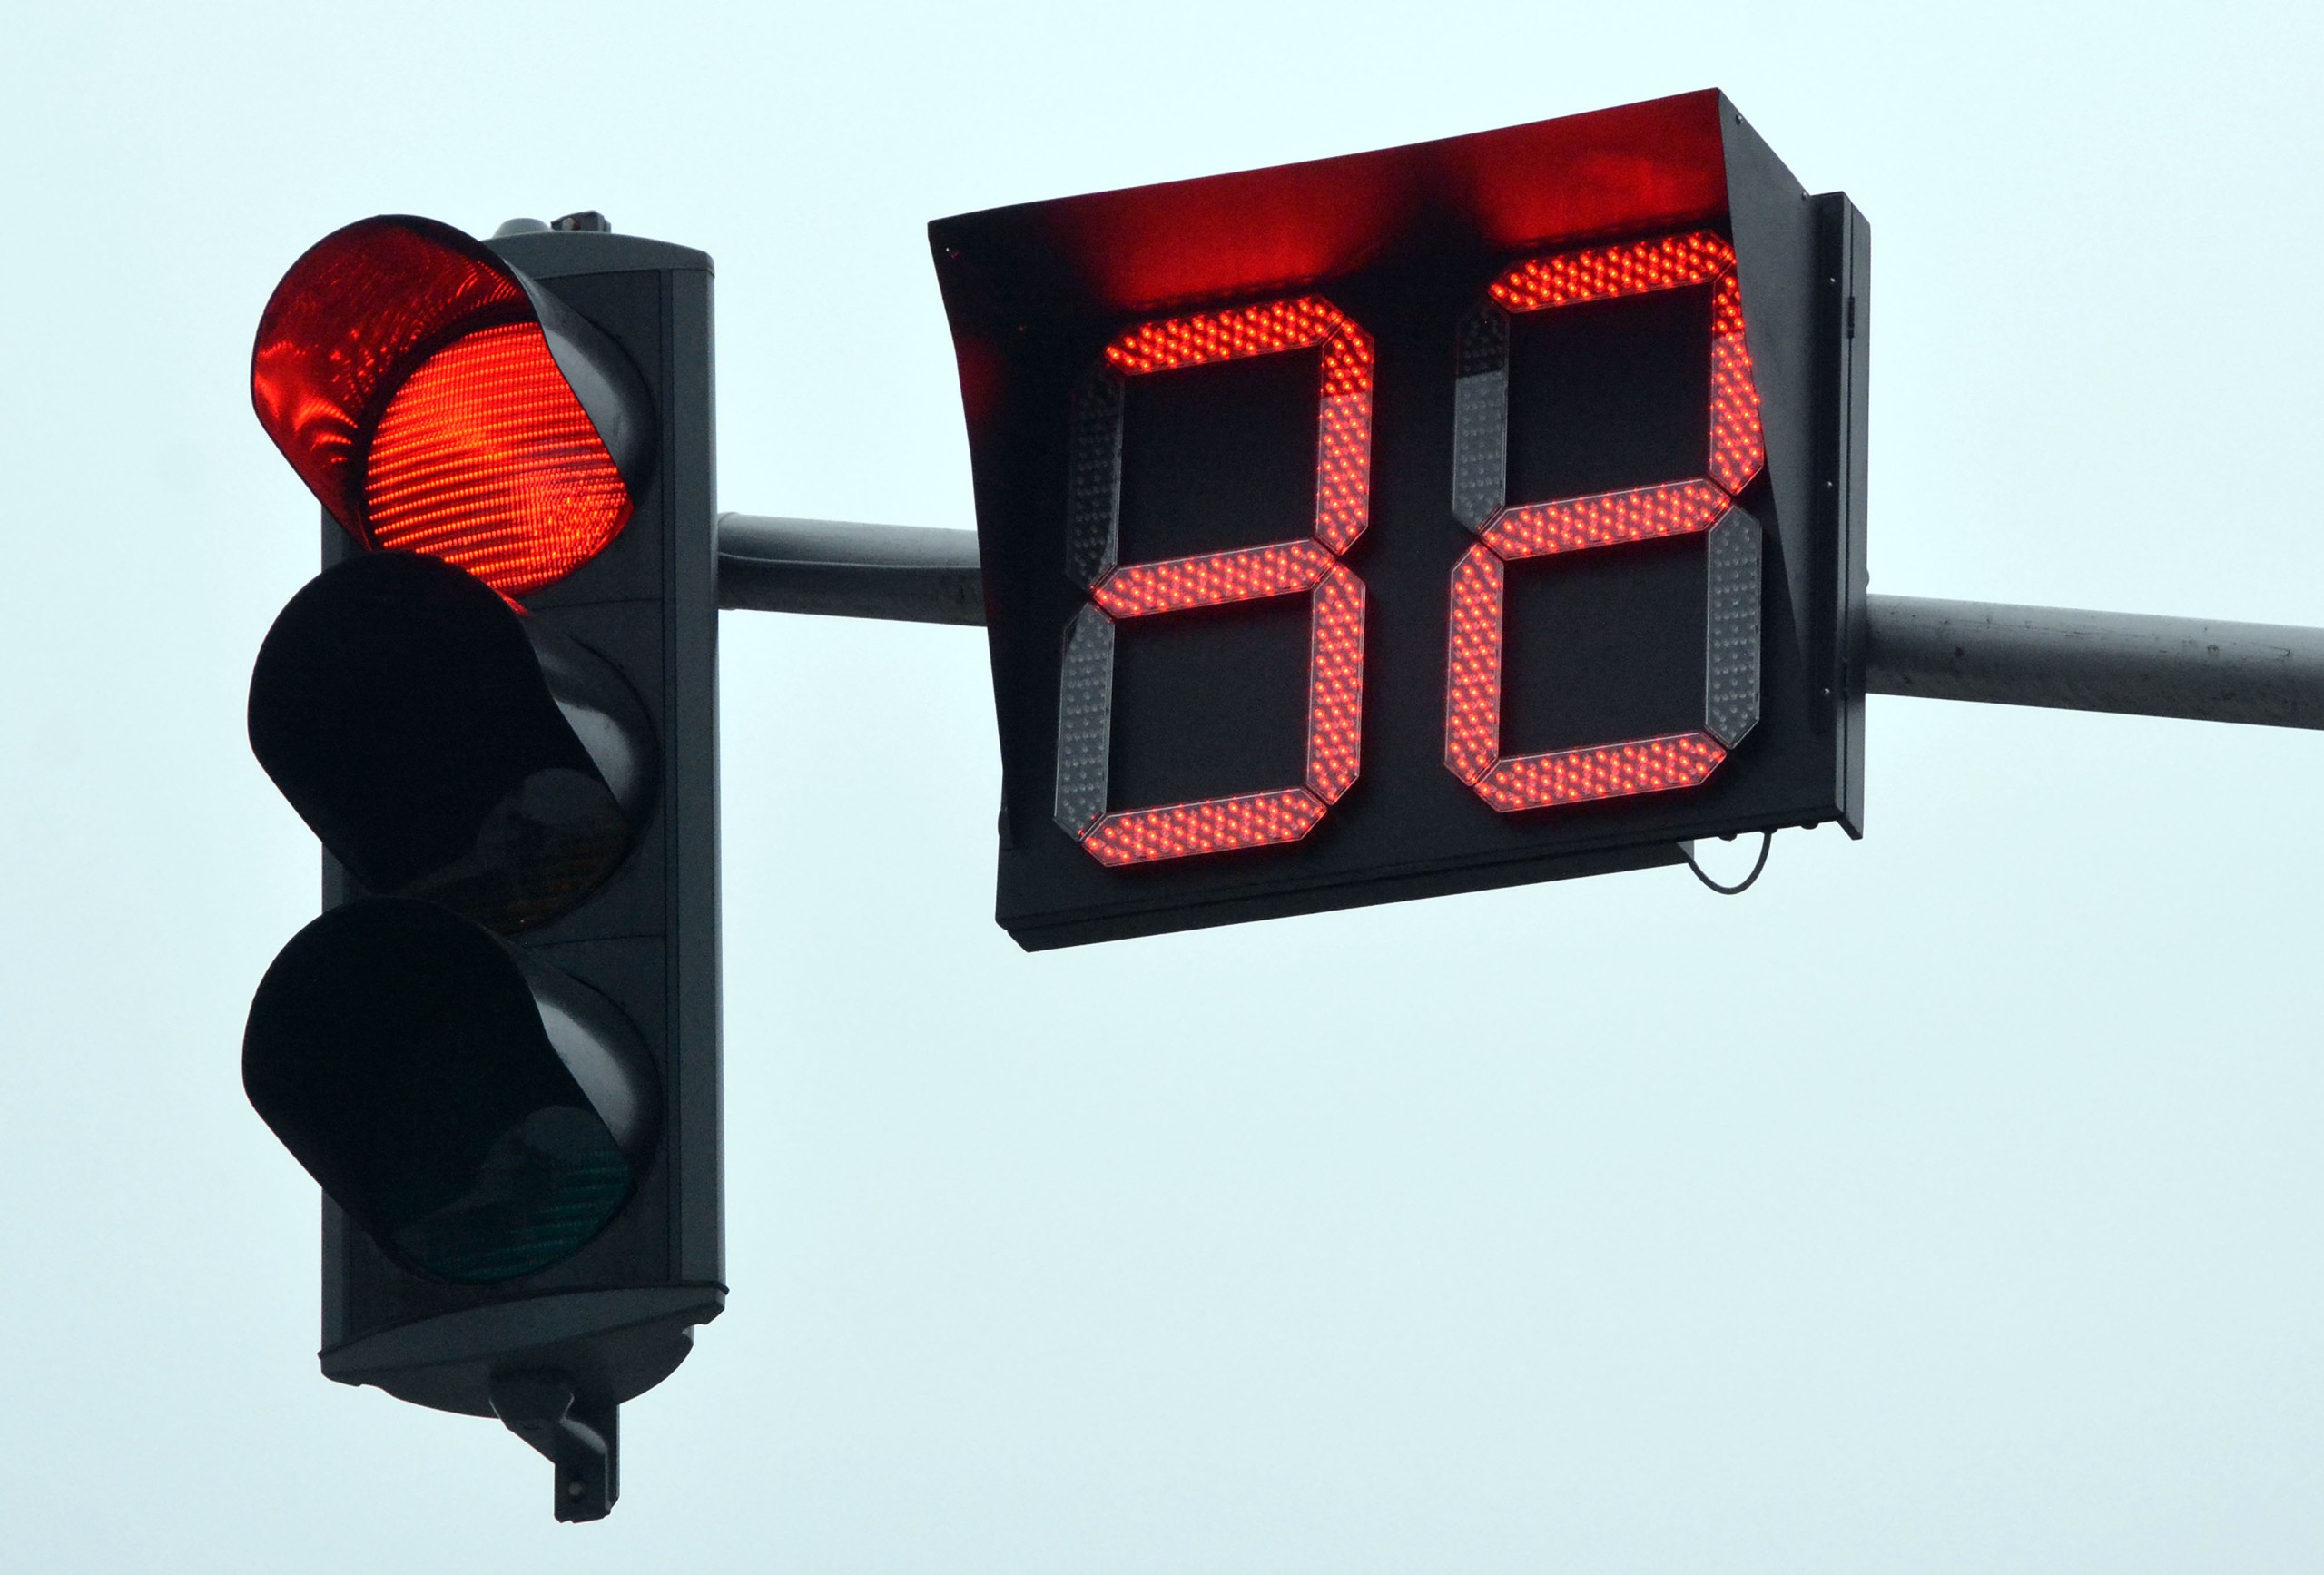 12.02.2018., Slavonski Brod - Na gradskim prometnicama postavljeni semafori s brojacima vremena. "nPhoto: Ivica Galovic/PIXSELL